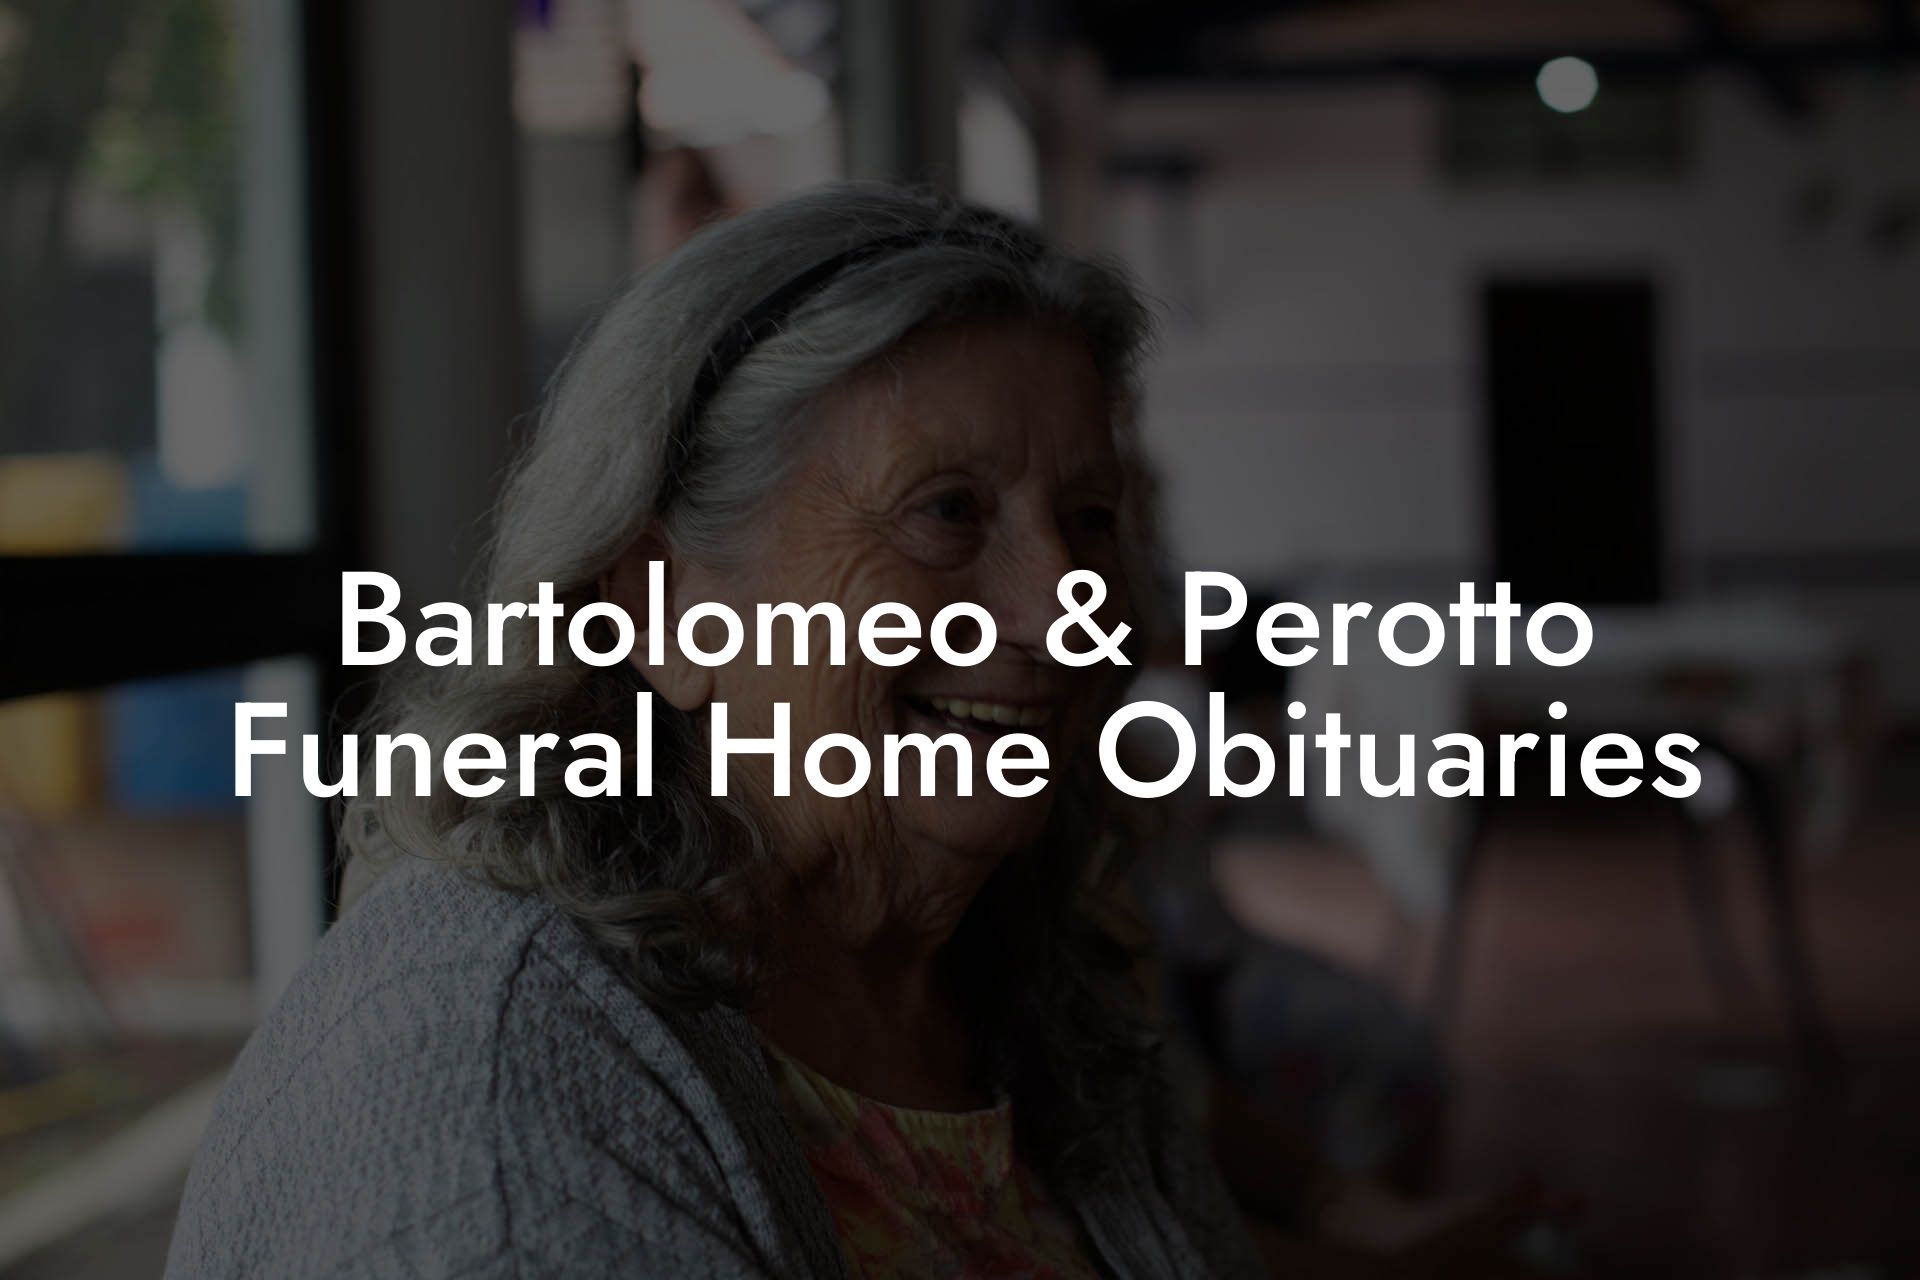 Bartolomeo & Perotto Funeral Home Obituaries